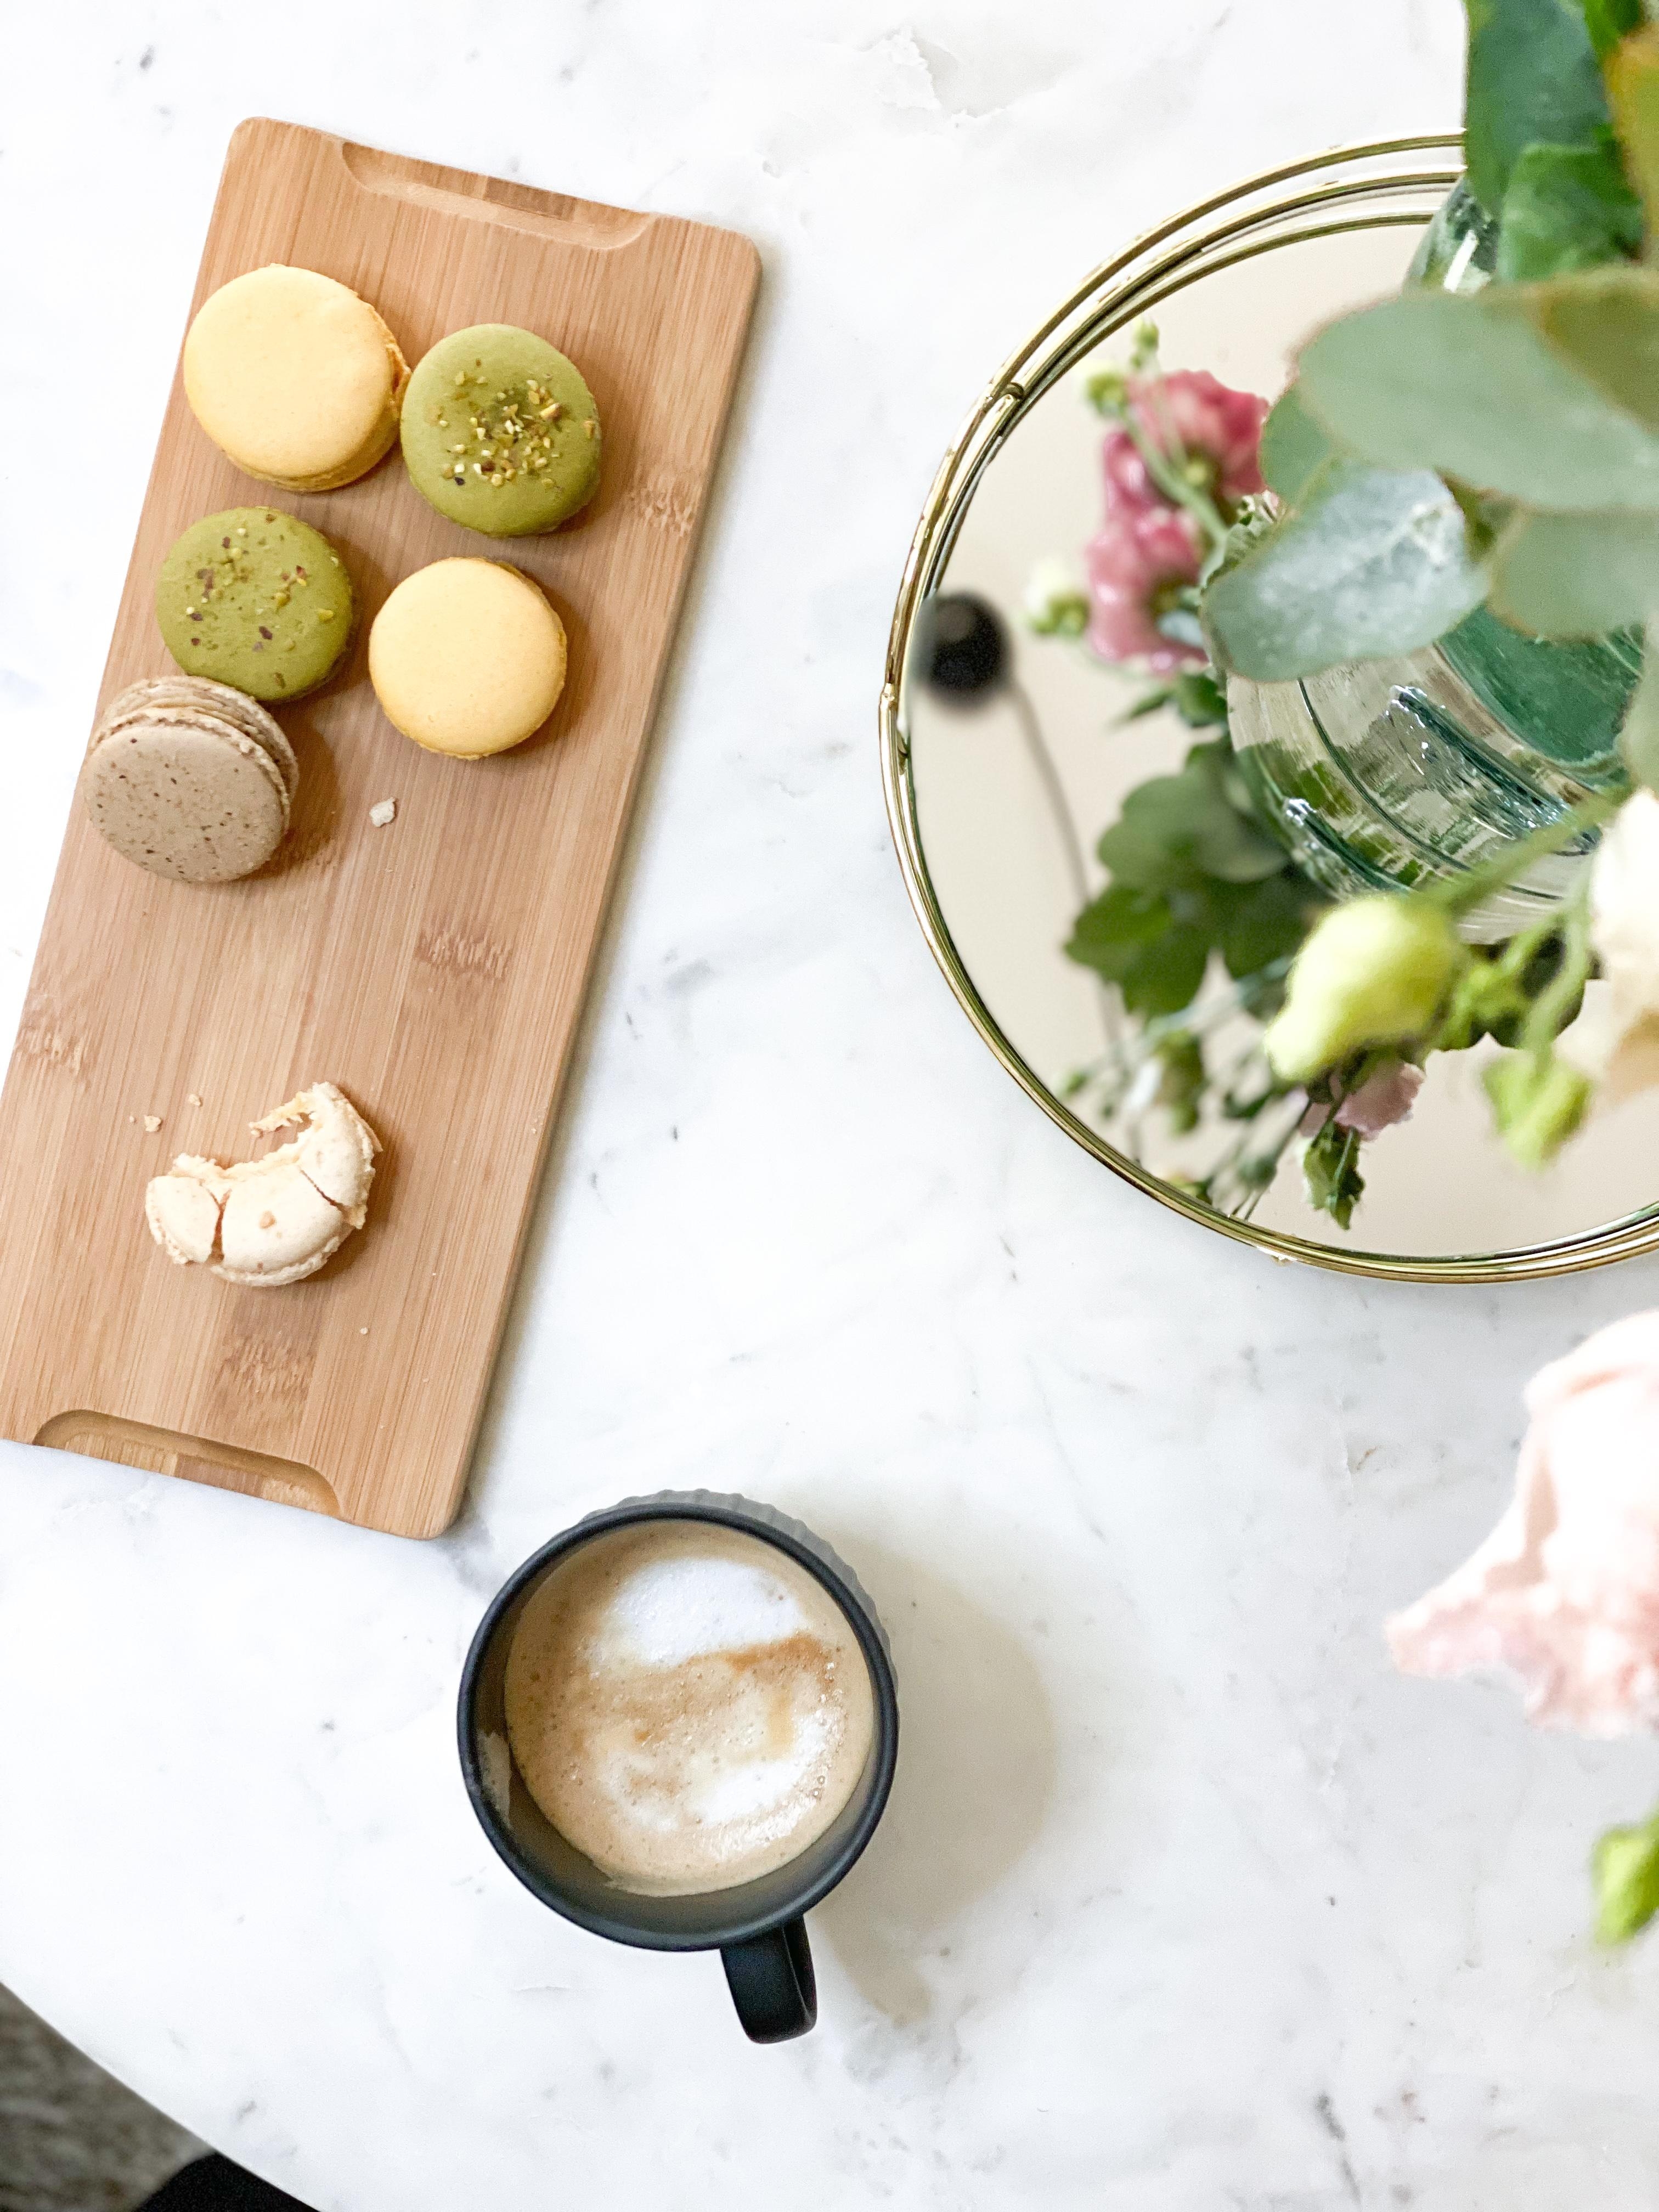 Kaffeepause
#frühlingsblumen #marmortisch #macarons #spiegeldeko
